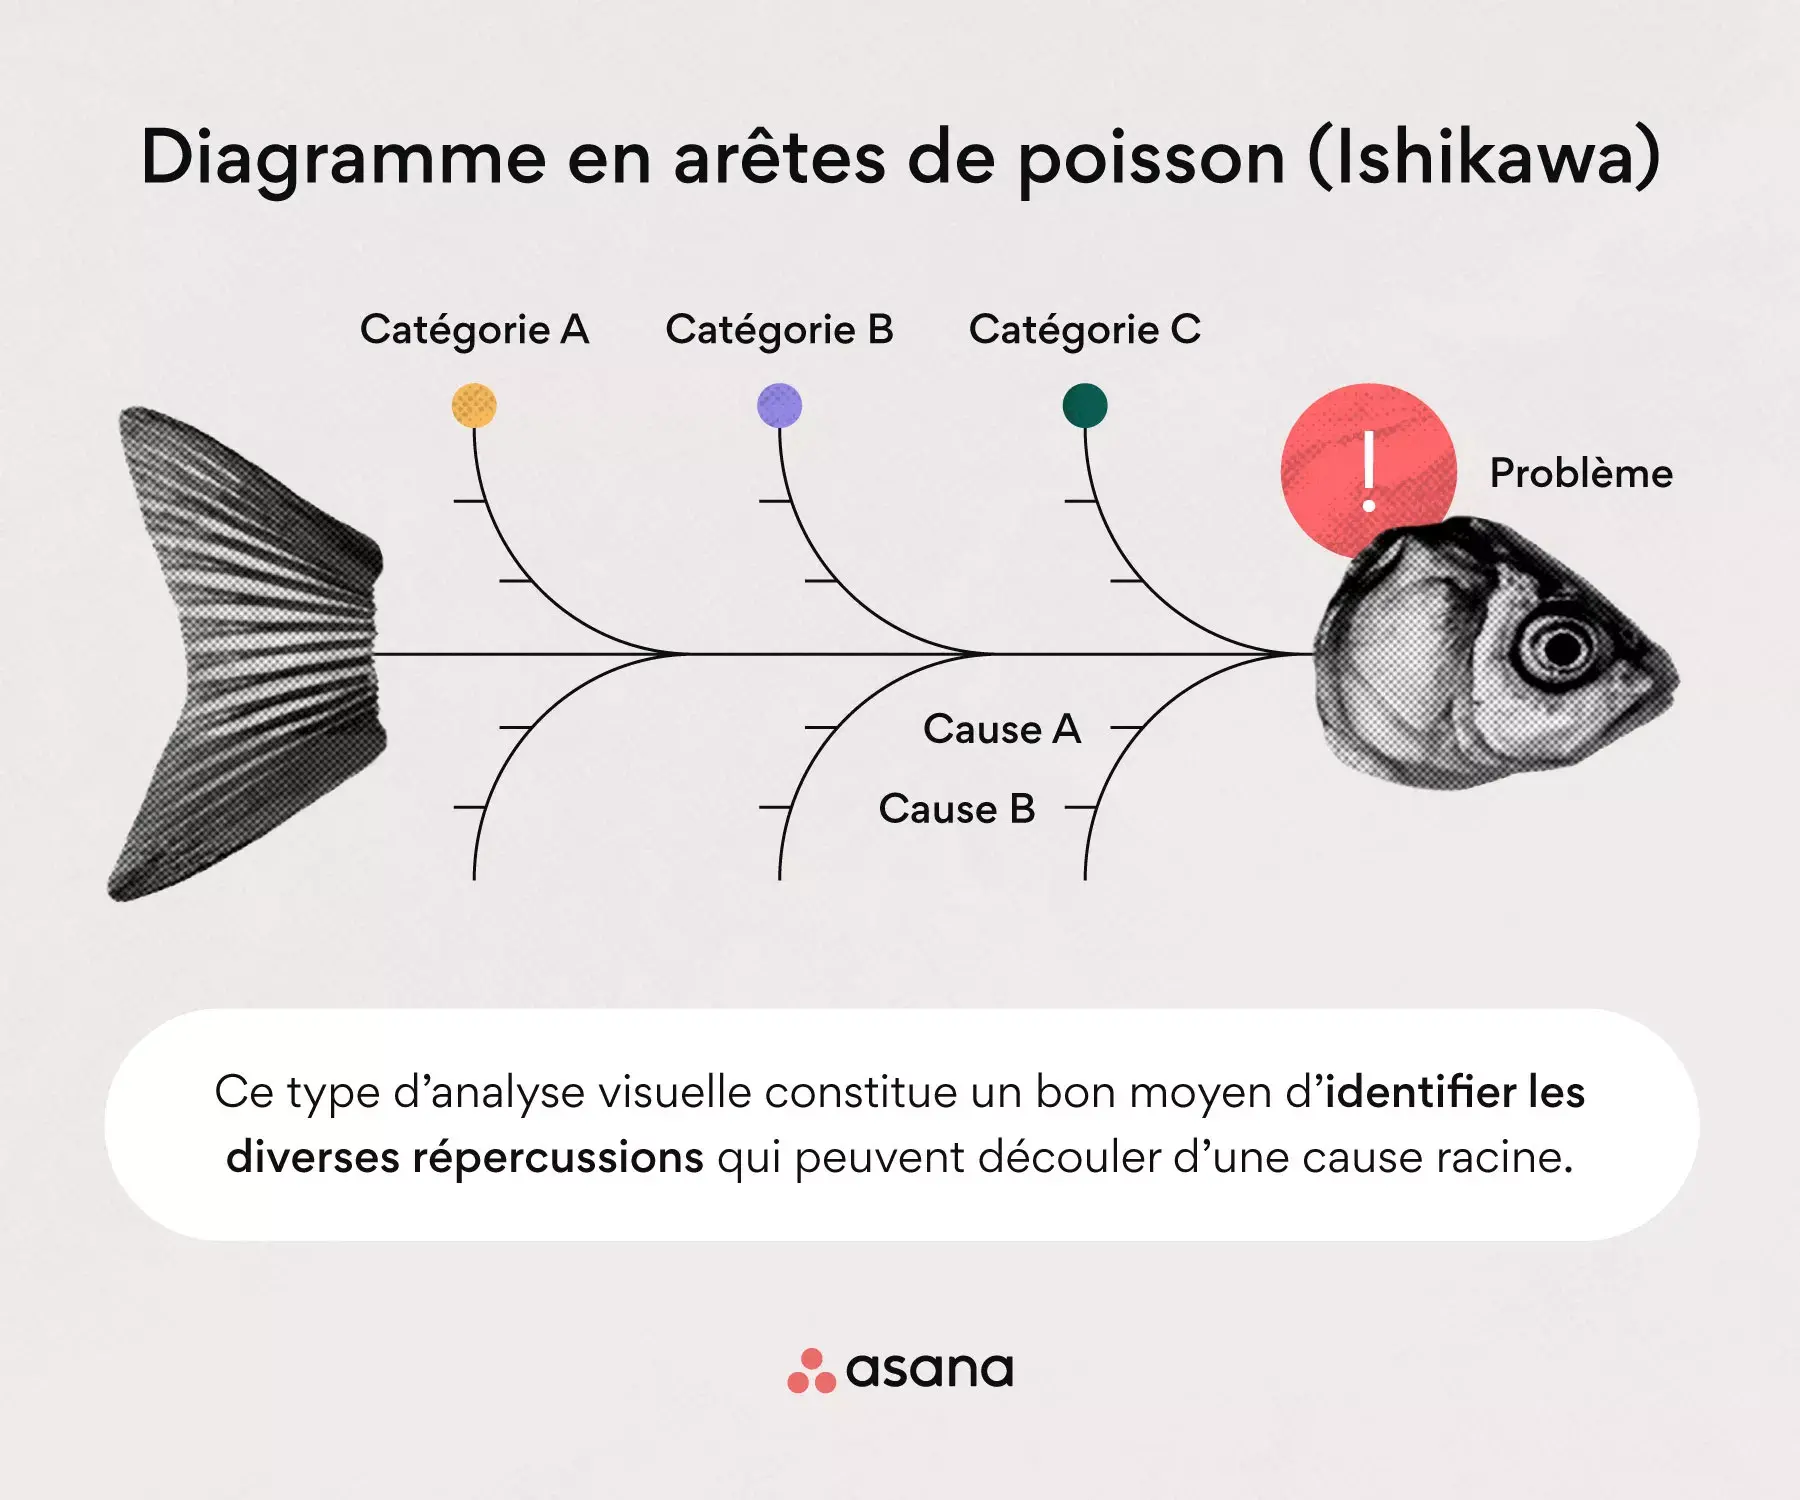 Le diagramme en arêtes de poisson